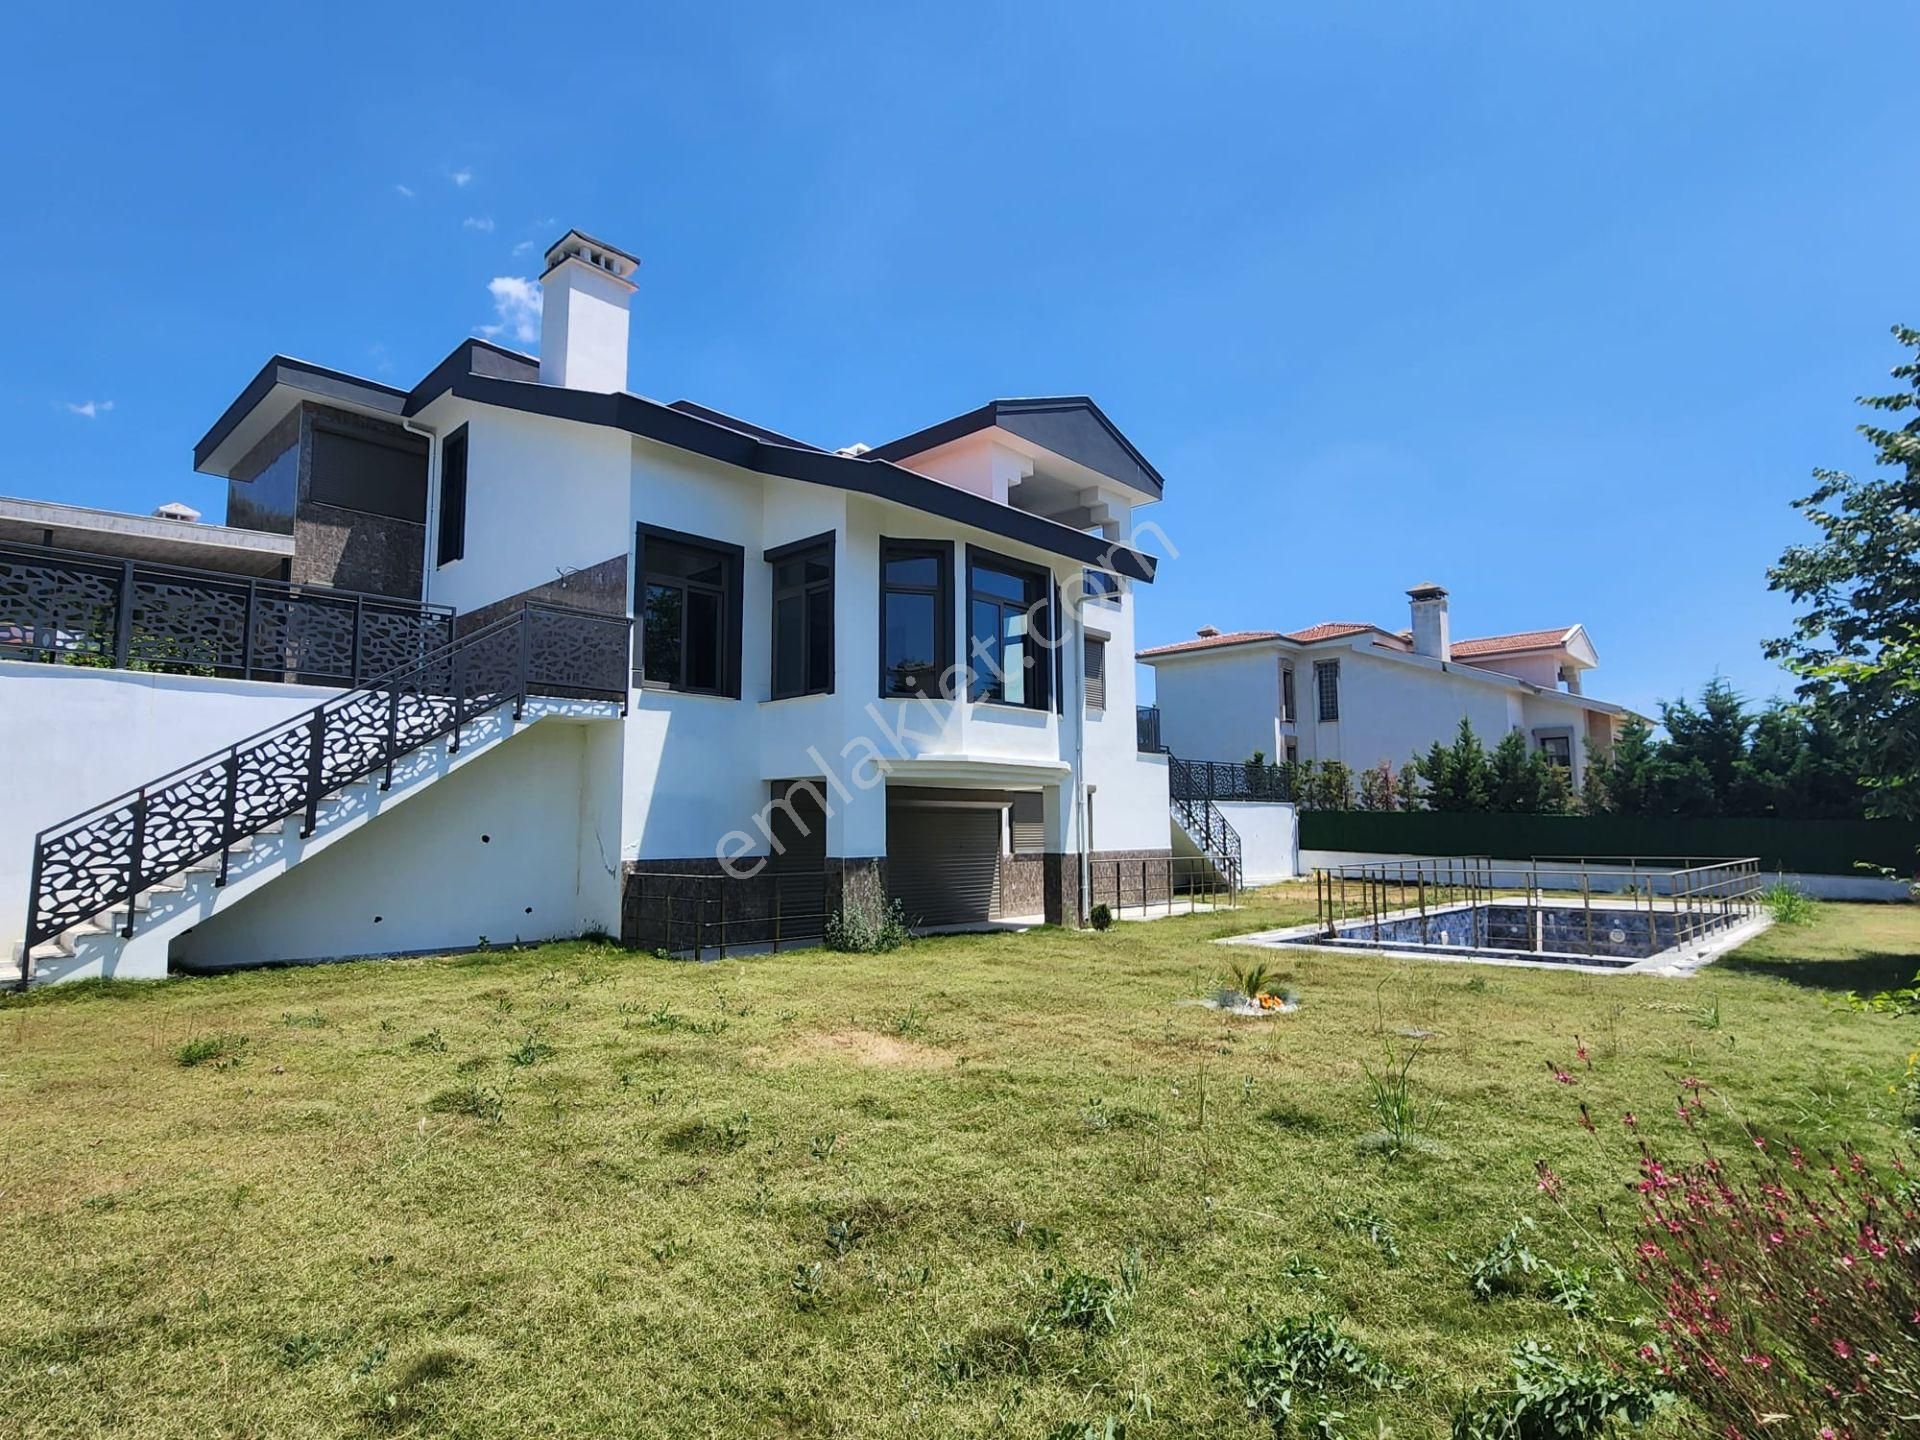 Kuşadası Karaova Satılık Villa  Kuşadası'nda Satılık 1130 m2 Arsa İçersinde Müstakil Kelepir Villa